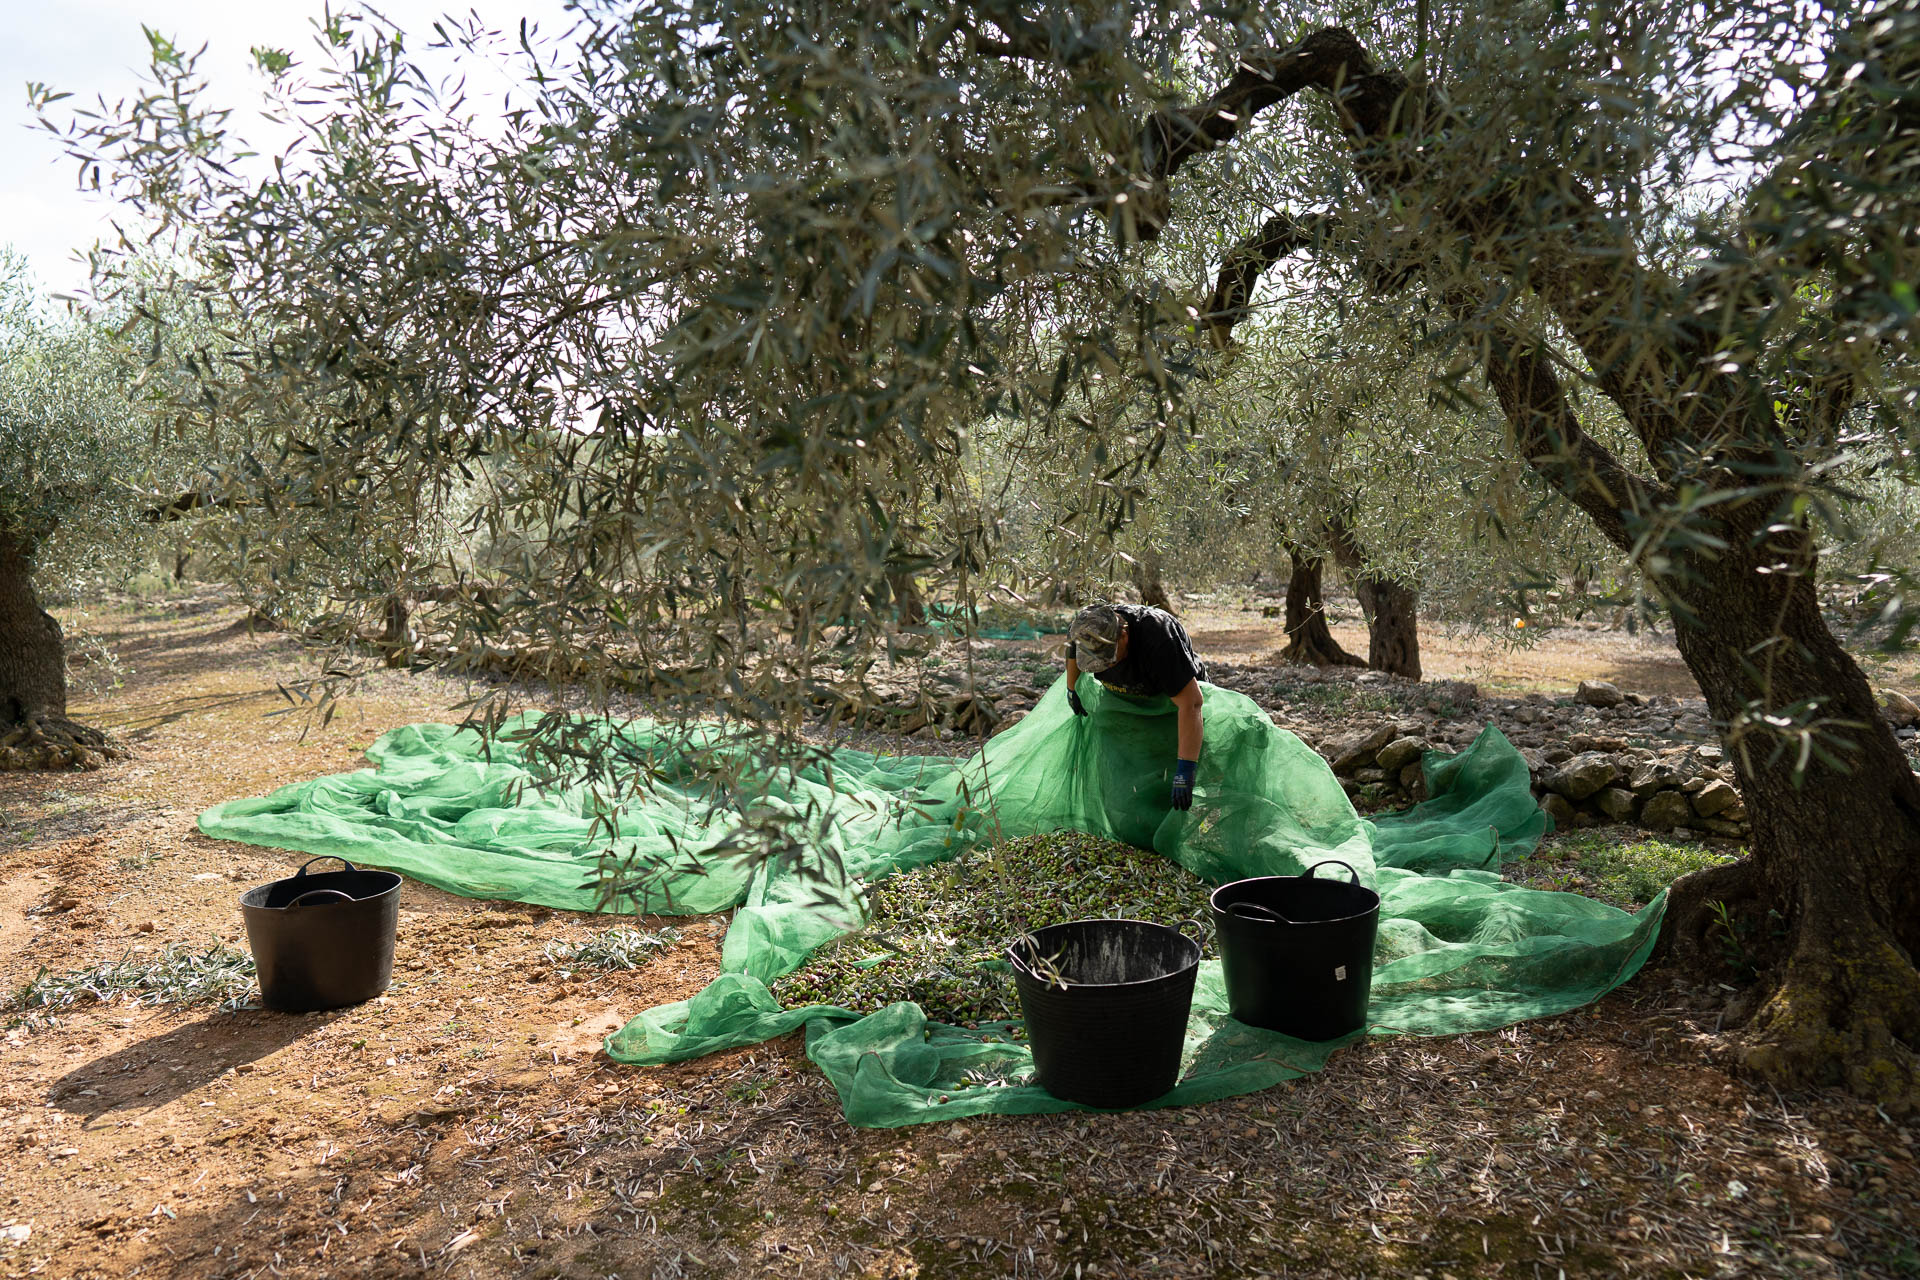 Ein Mann sortiert Oliveres1 Oliven in einem Netz welches unter einem Olivenbaum liegt und viele reife Oliven fasst.